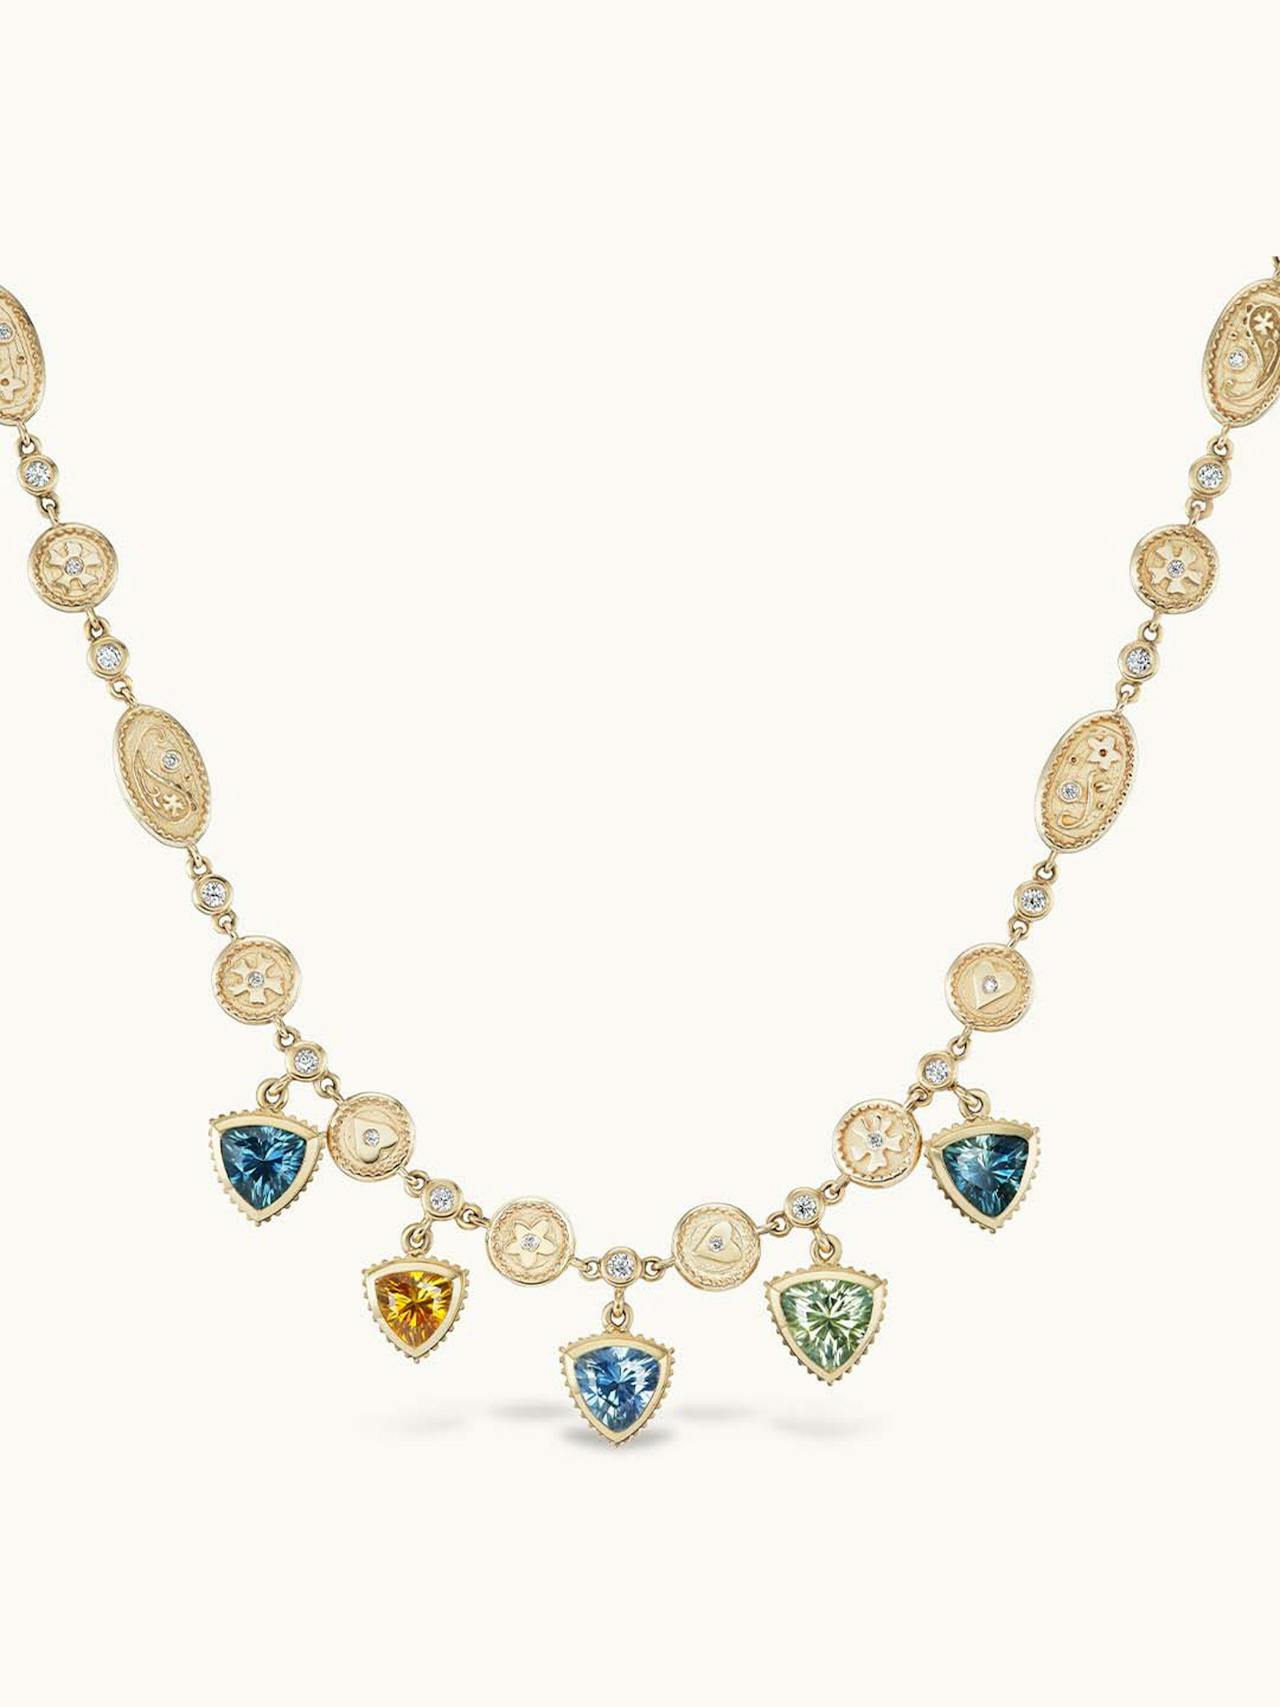 Montana sapphire trillion necklace